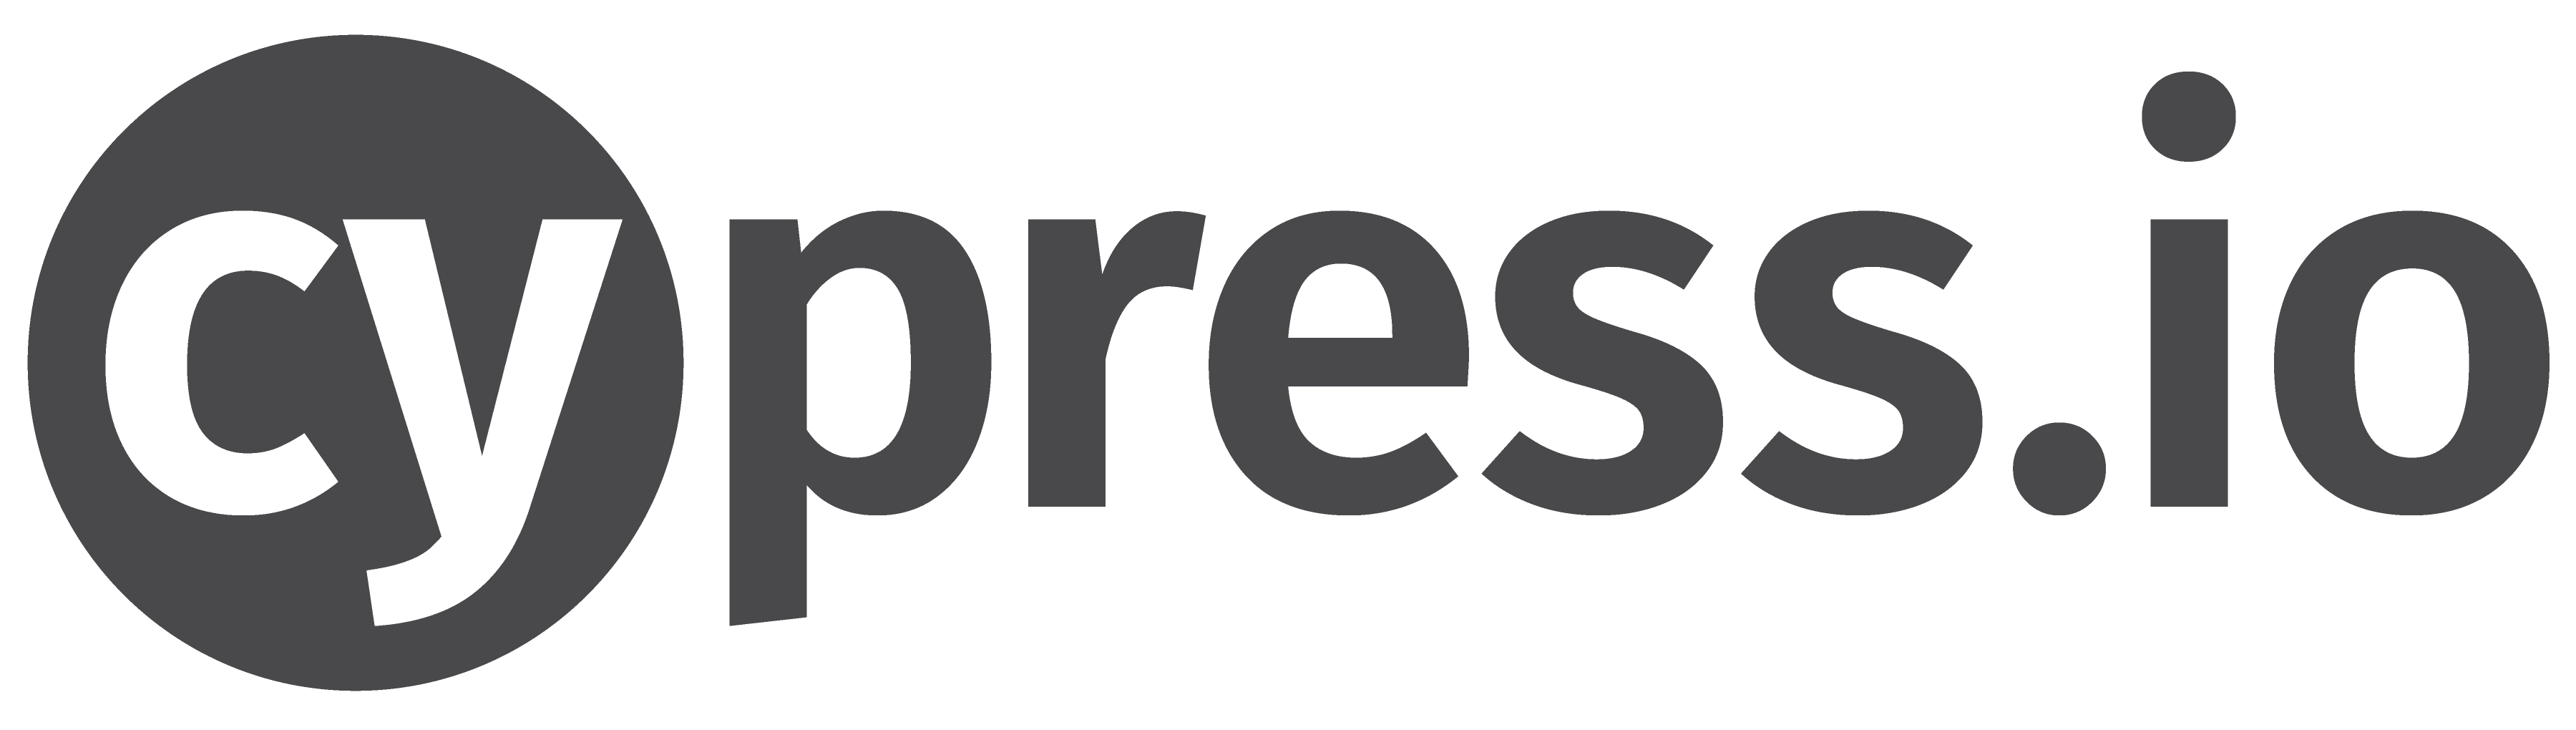 Cypress testautomatisering